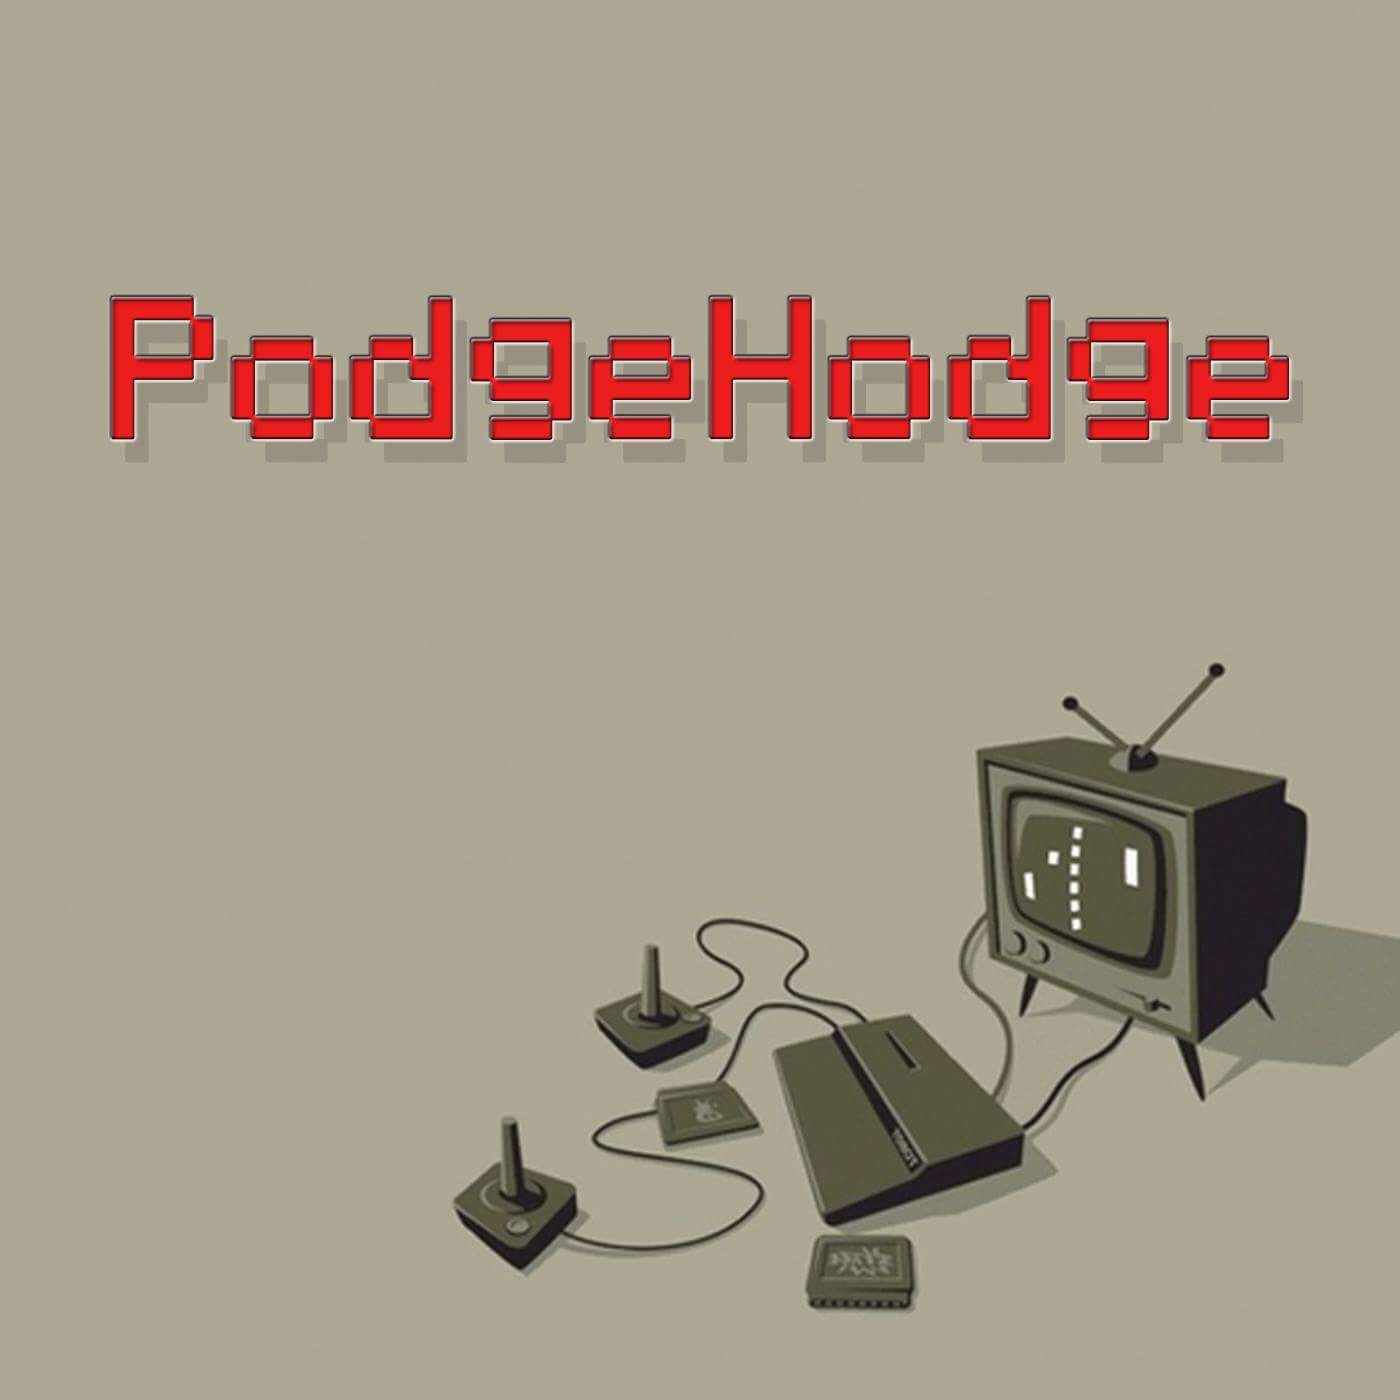 PodgeHodge